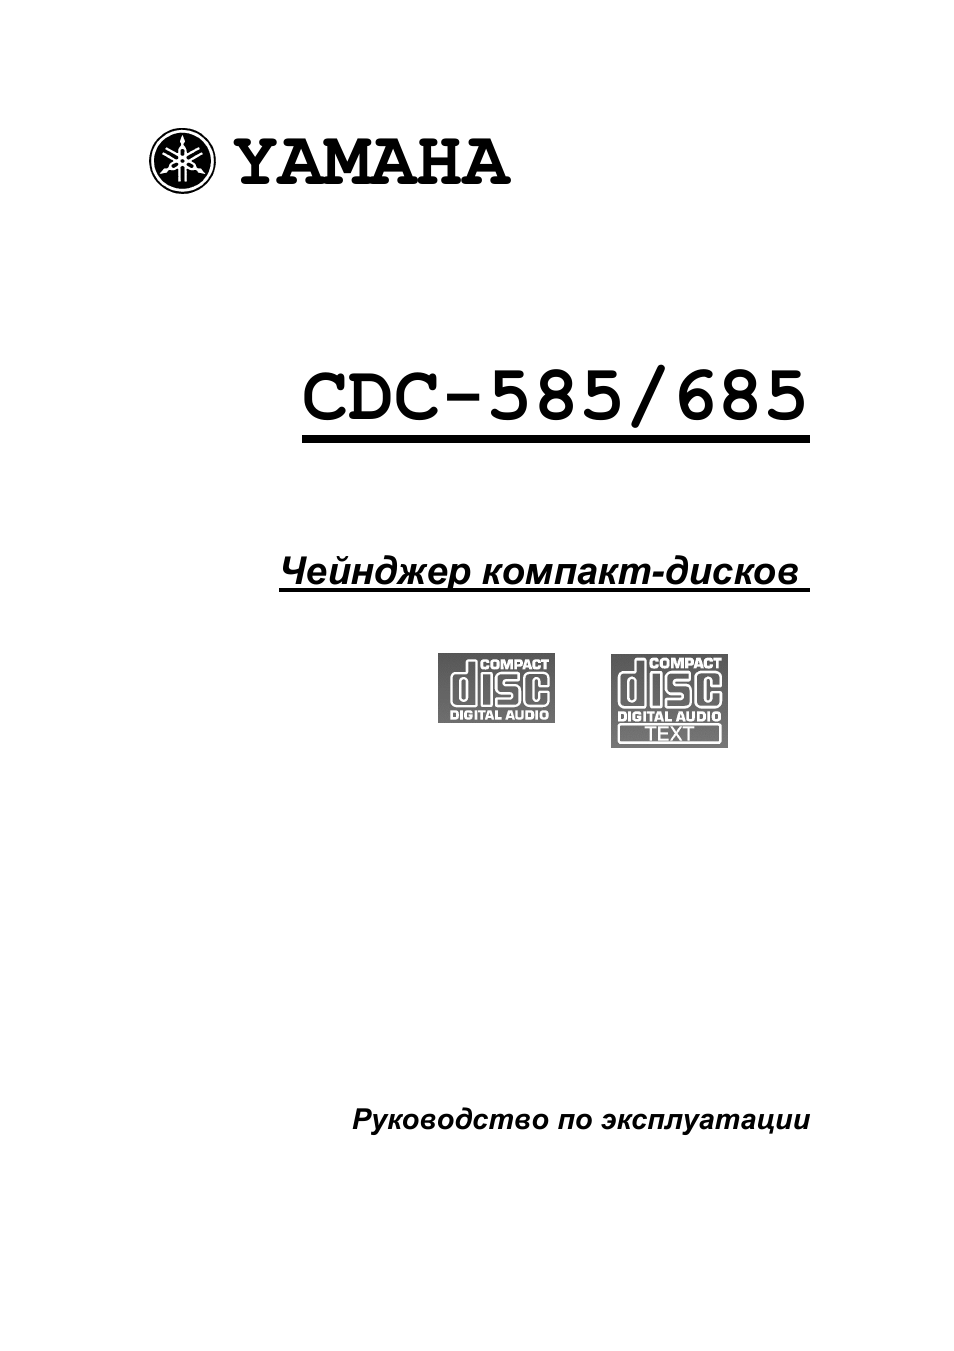 Инструкция по эксплуатации Yamaha CDC-585  RU | 21 cтраница